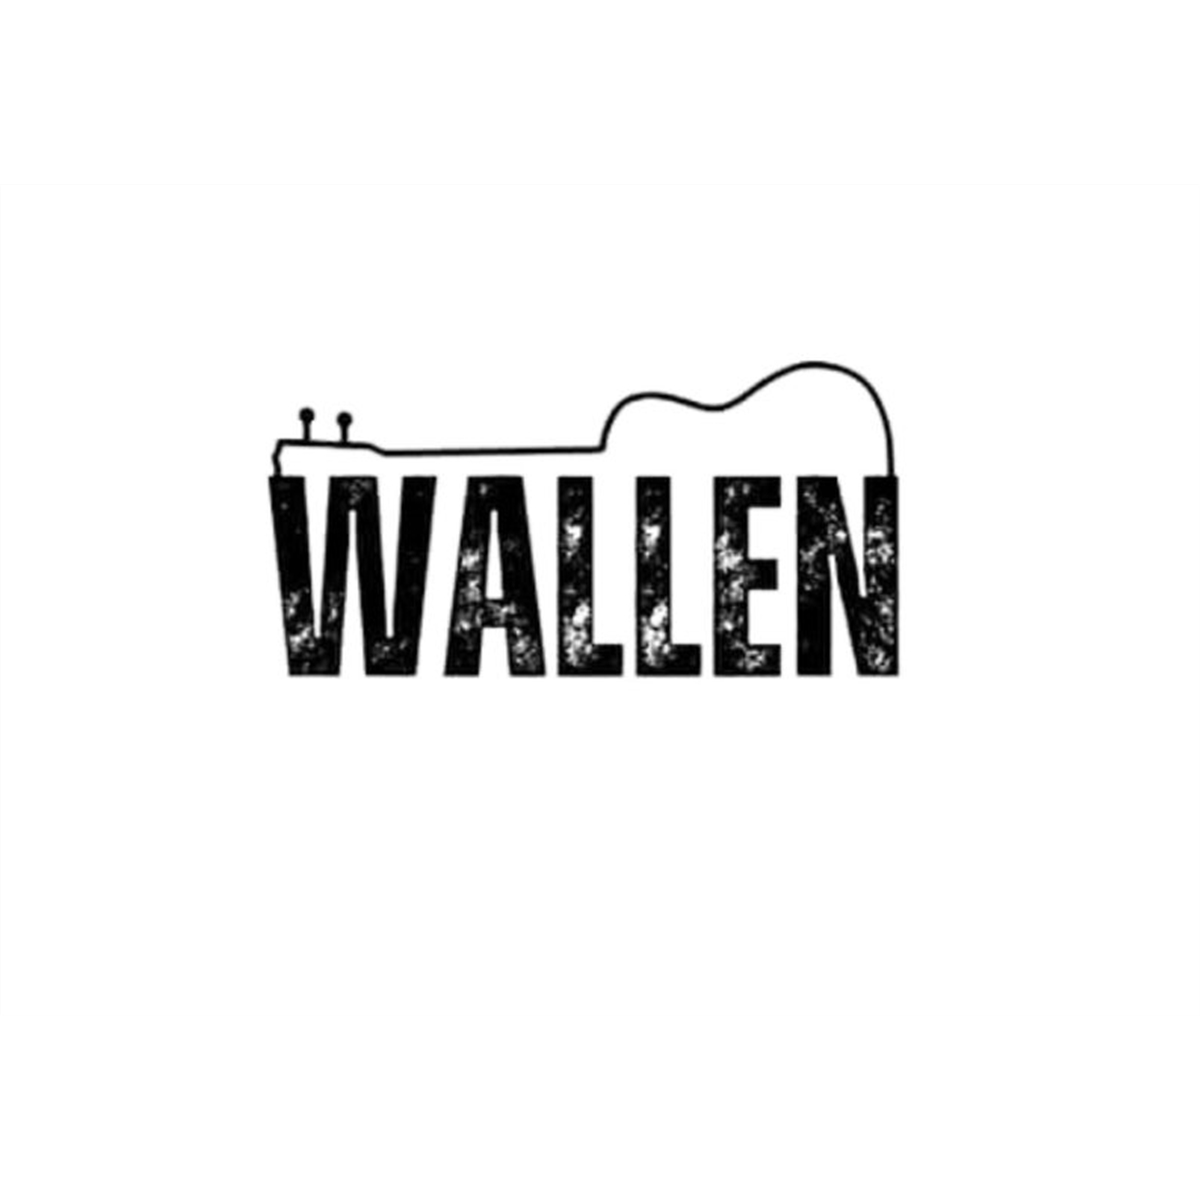 wallen-digital-downloadmorgan-wallen-png-image-1